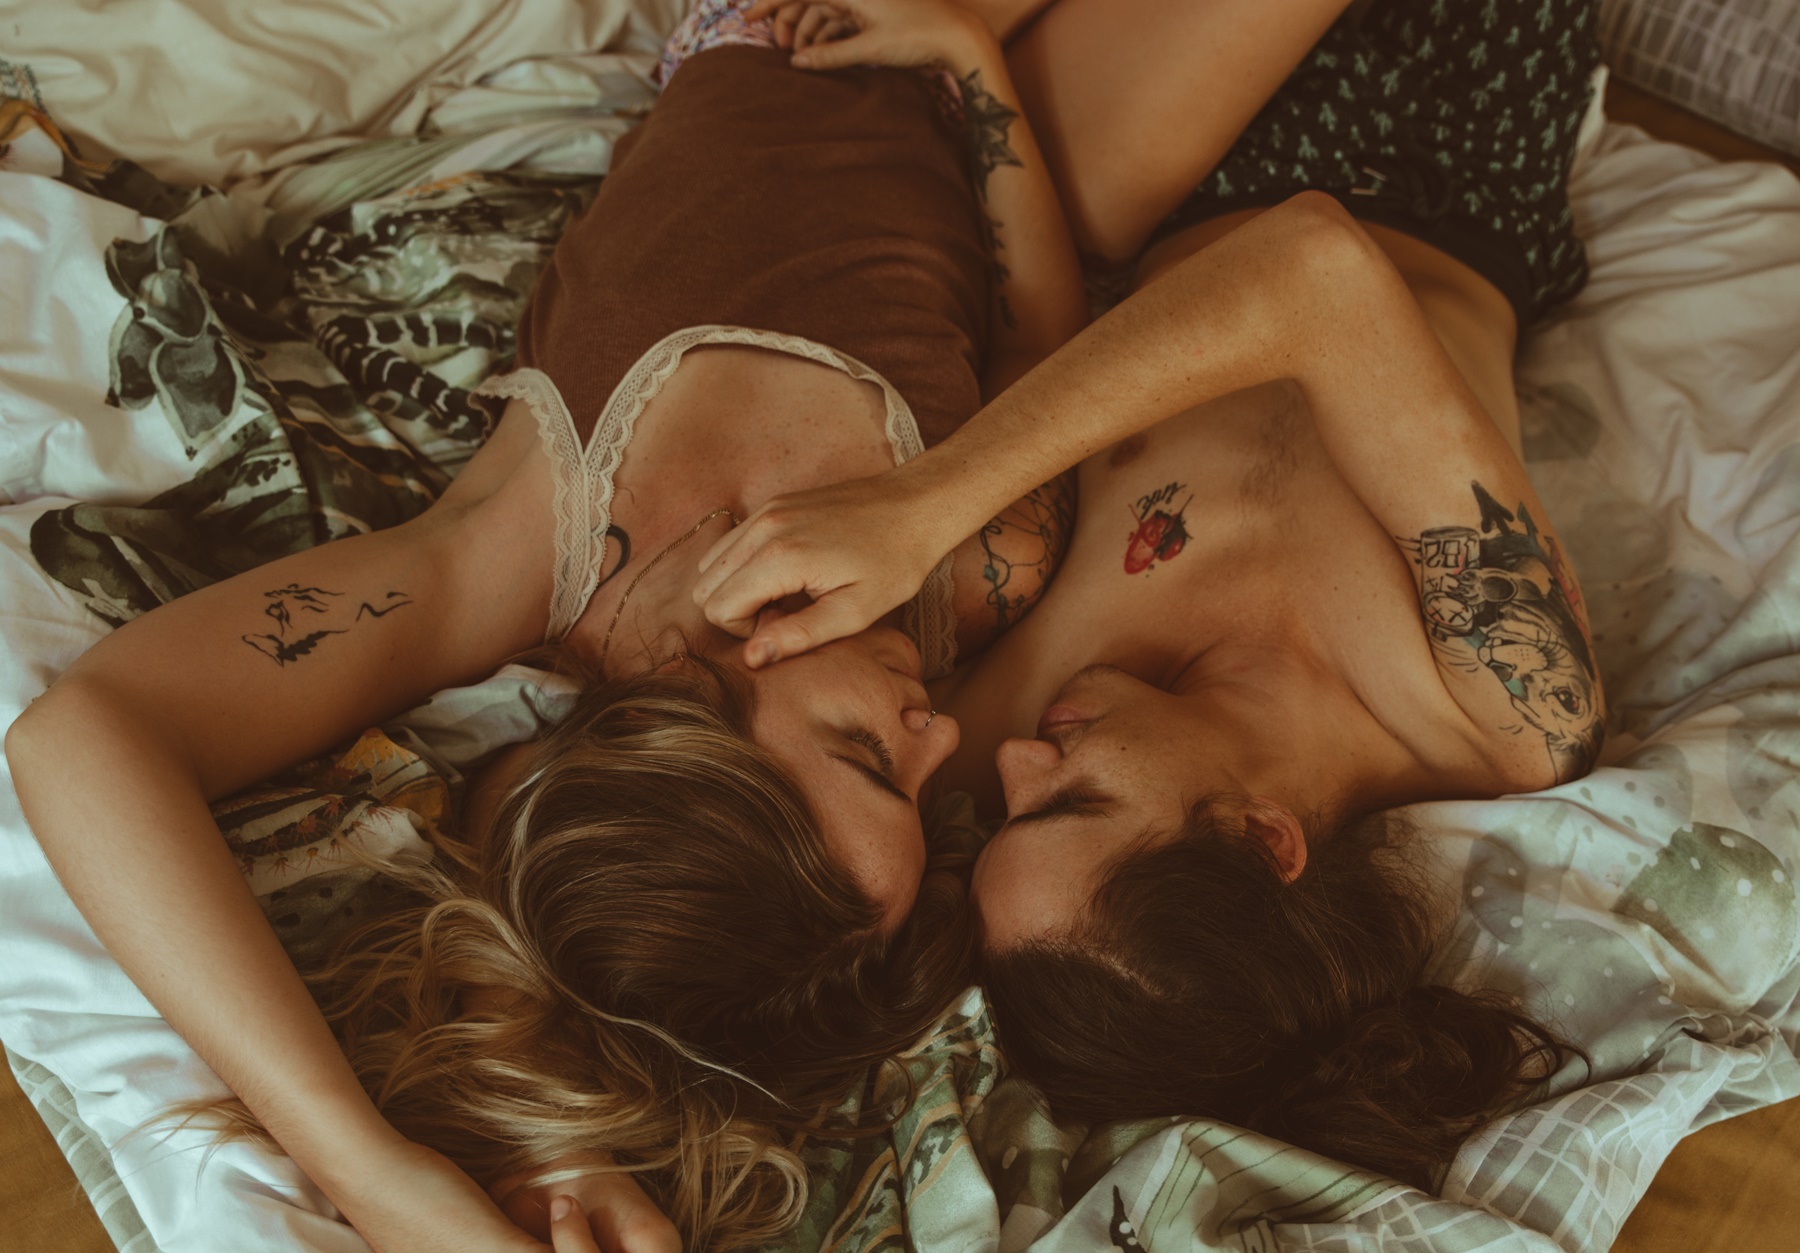 Ζώδια και σεξ: Αυτά κάνουν χαμό στο κρεβάτι